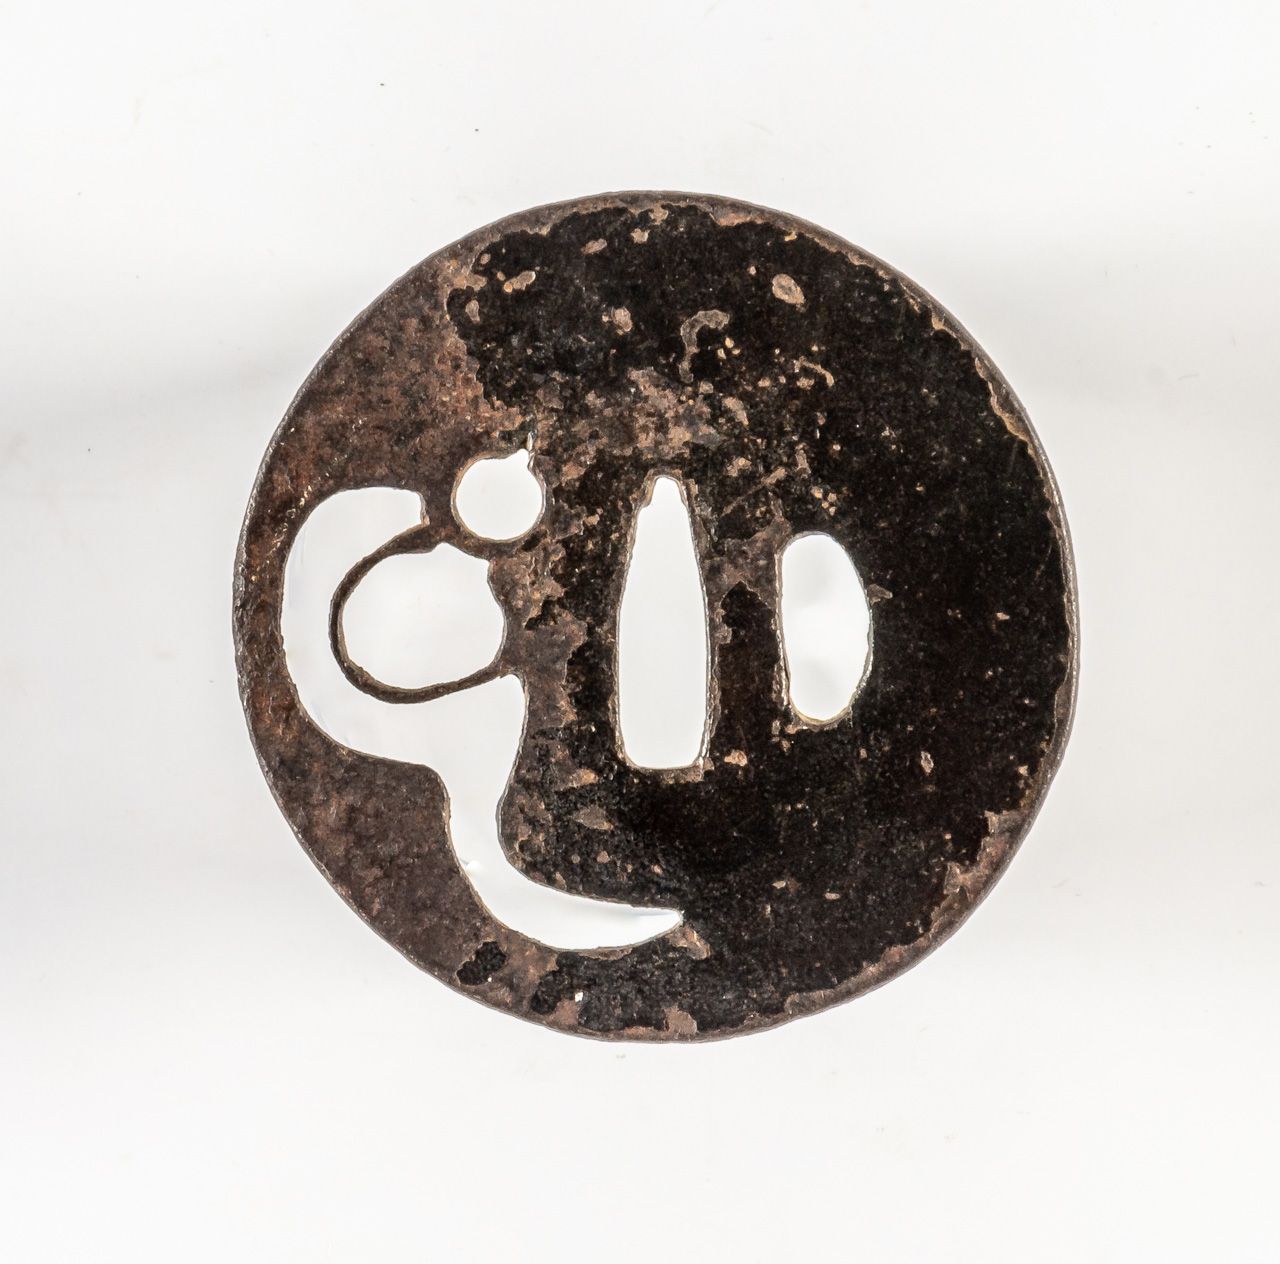 TSUBA Japón, hierro, siglo XVI.

Diámetro: 7,9 cm



Procedencia: Colección René&hellip;